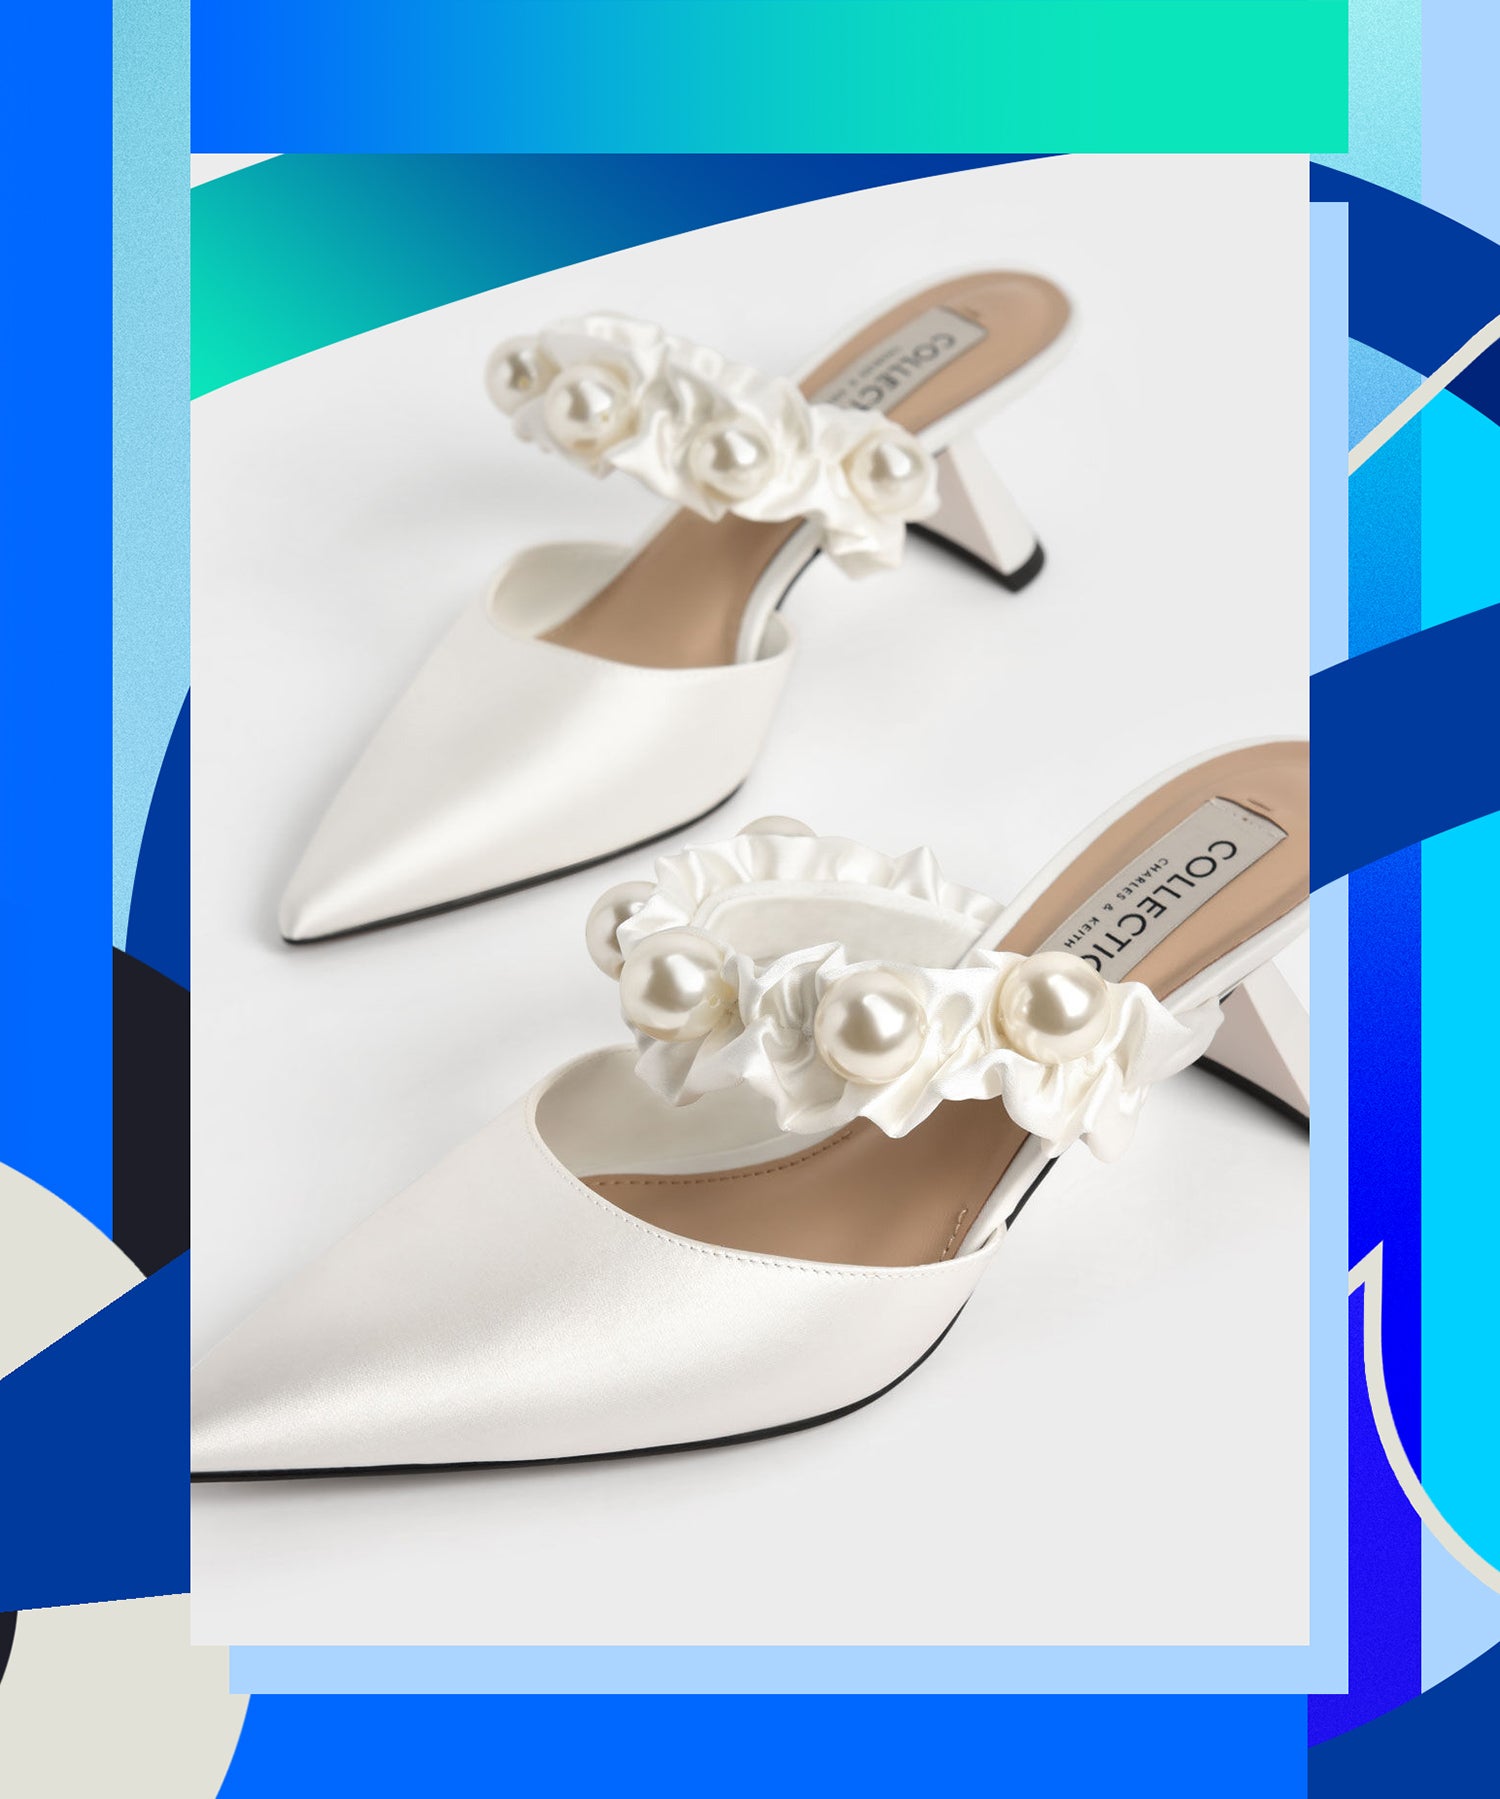 bride comfortable wedding shoes